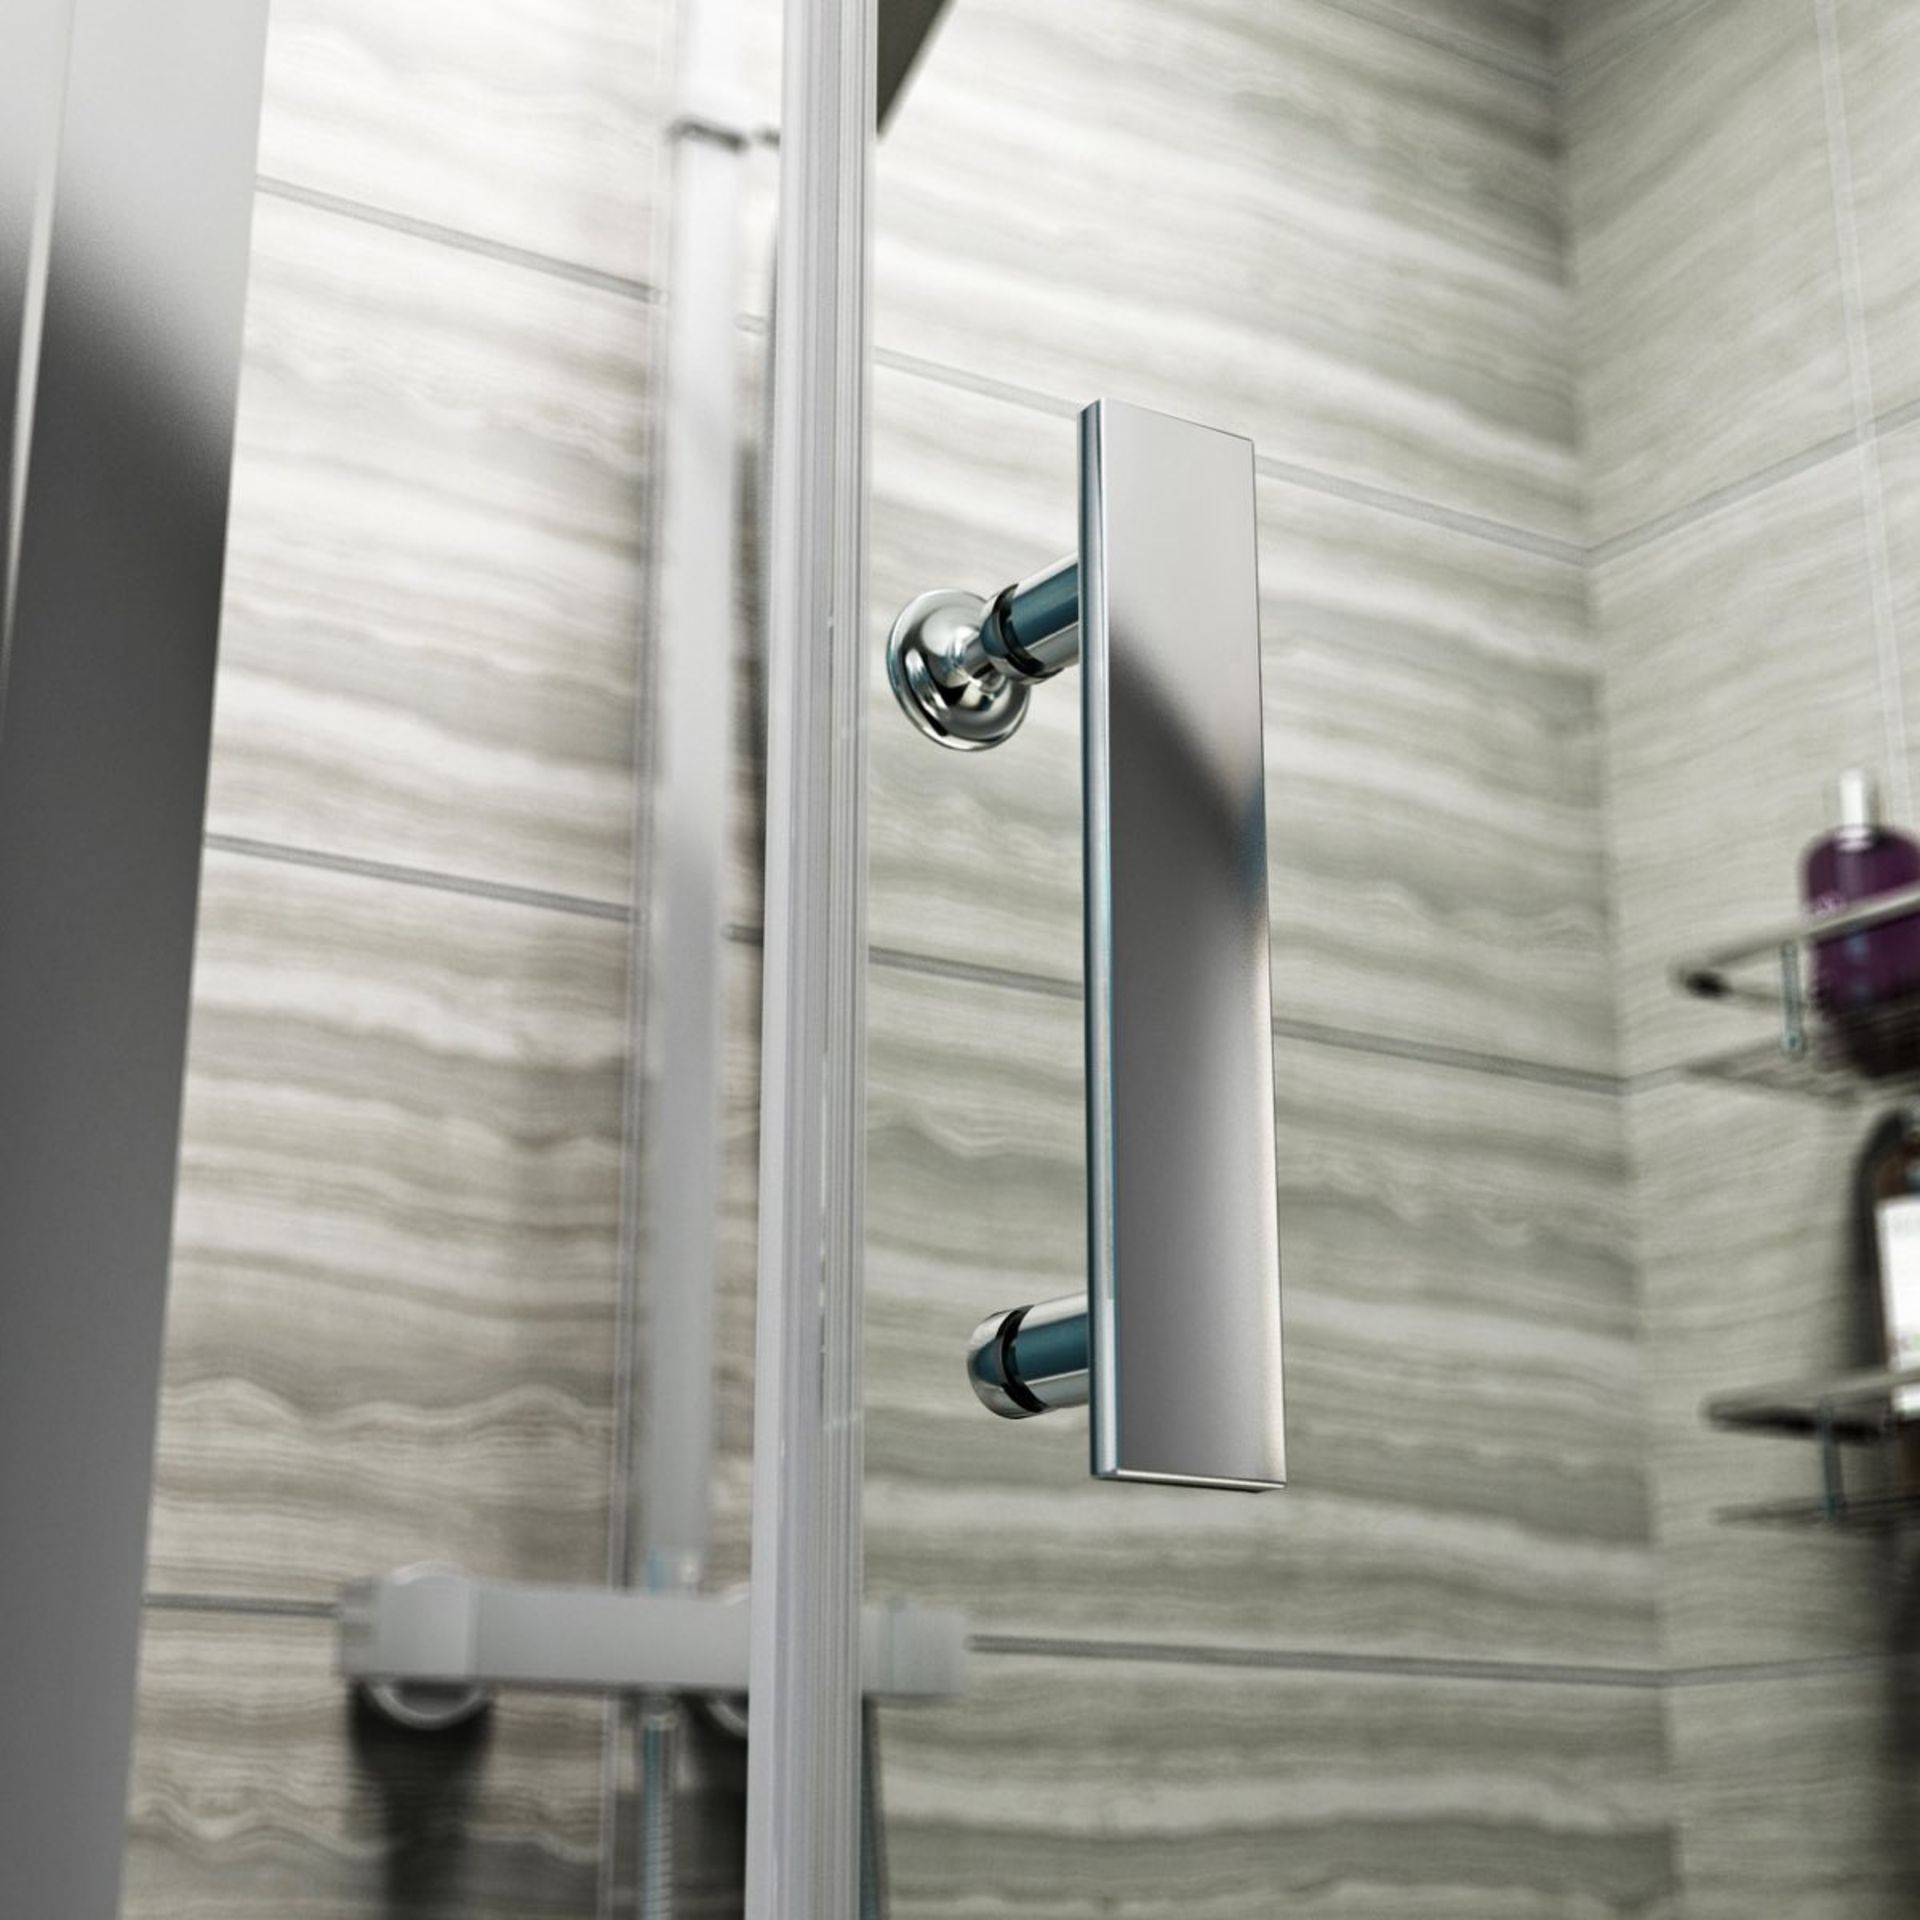 1 x 1400mm Framed Sliding Shower Door Enclosure - Includes 8mm Framed 1400mm Sliding Shower Door, - Image 6 of 9